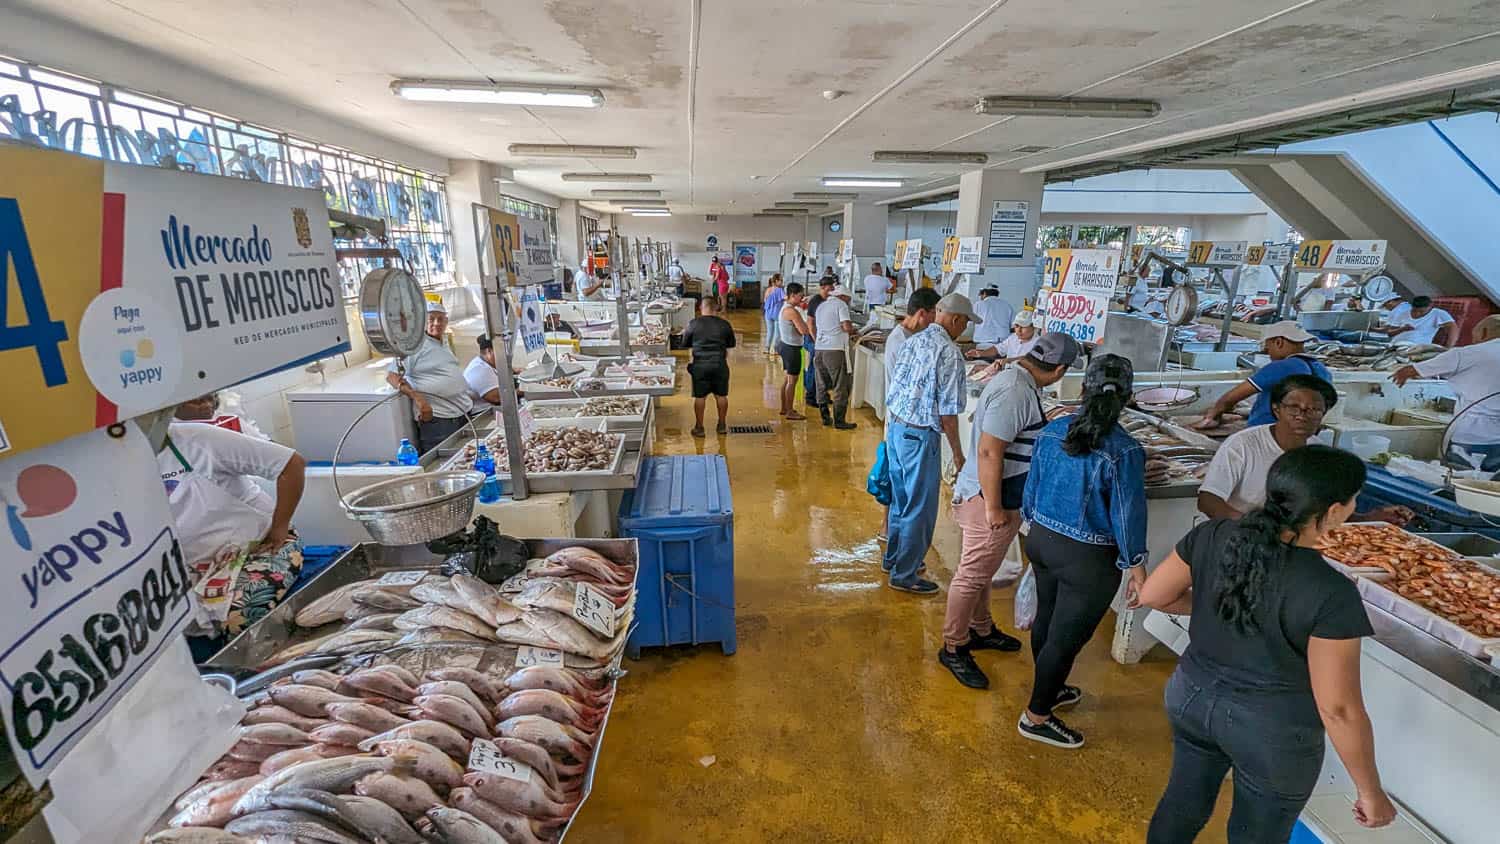 Mercado de Mariscos Panama City